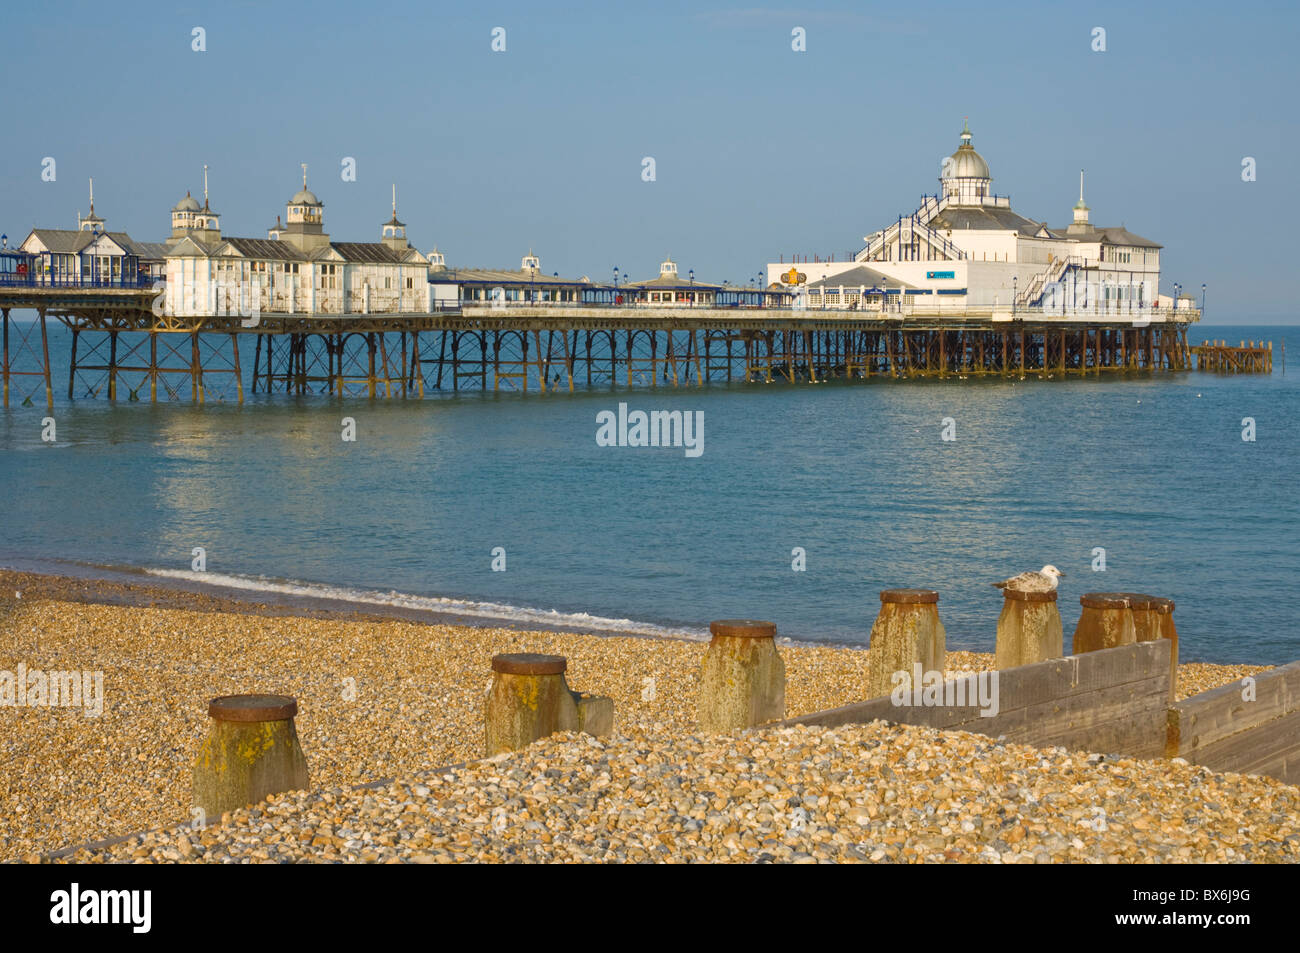 Eastbourne Pier, plage et épis, Eastbourne, East Sussex, Angleterre, Royaume-Uni, Europe Banque D'Images